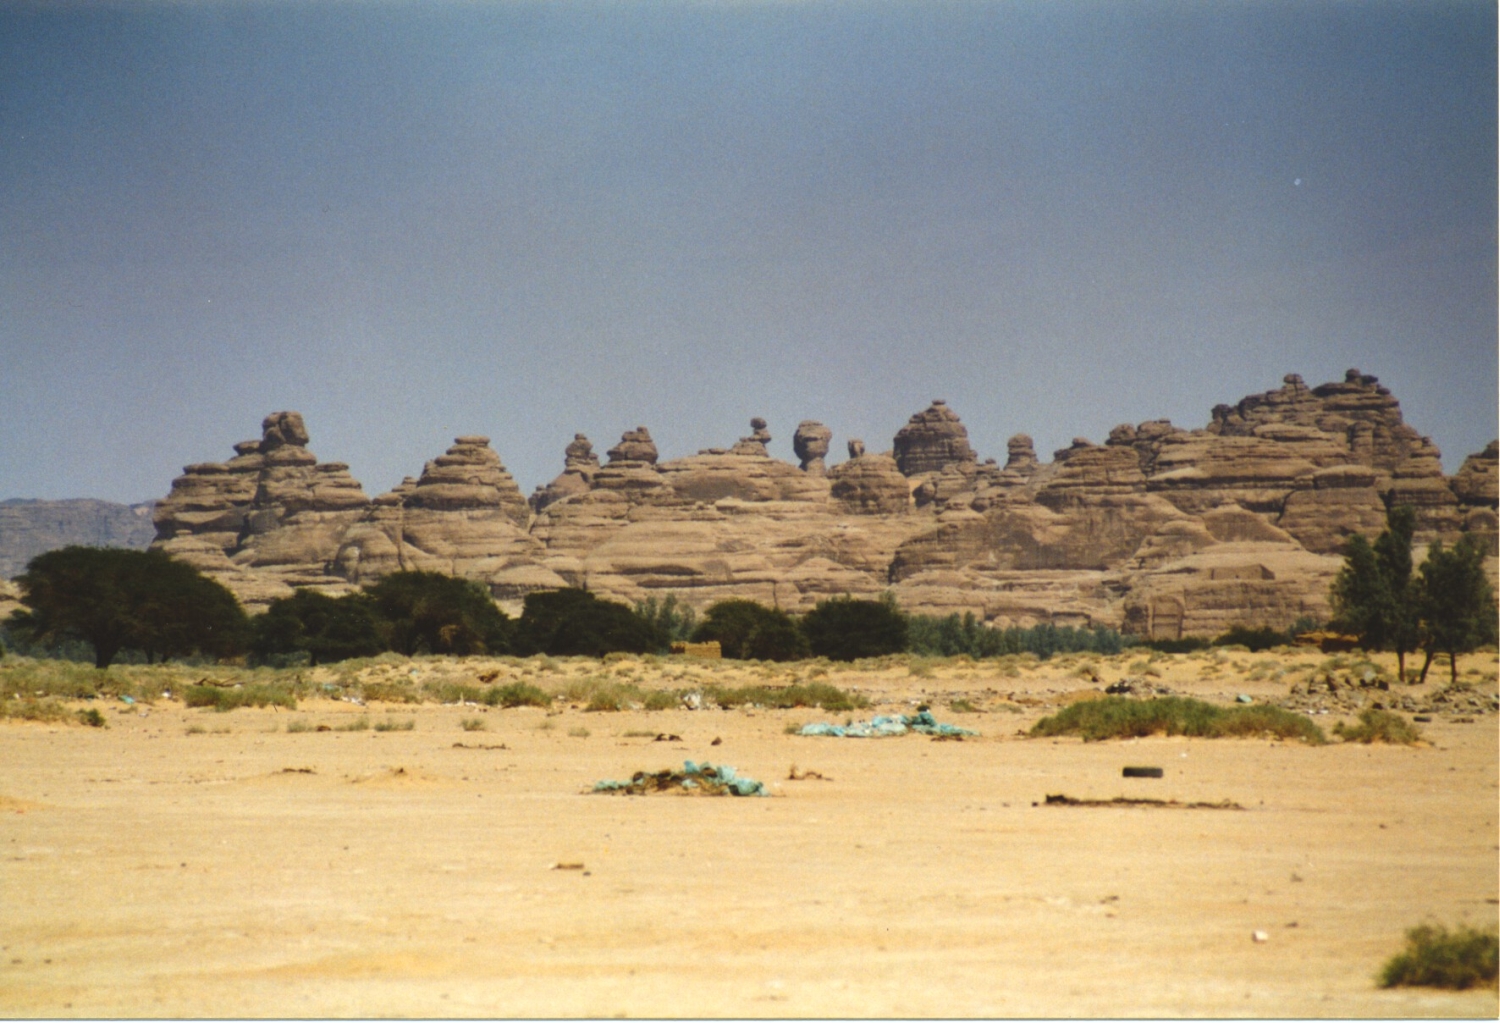 Jabal Ithlib with Qasr Al-Bint in the foreground